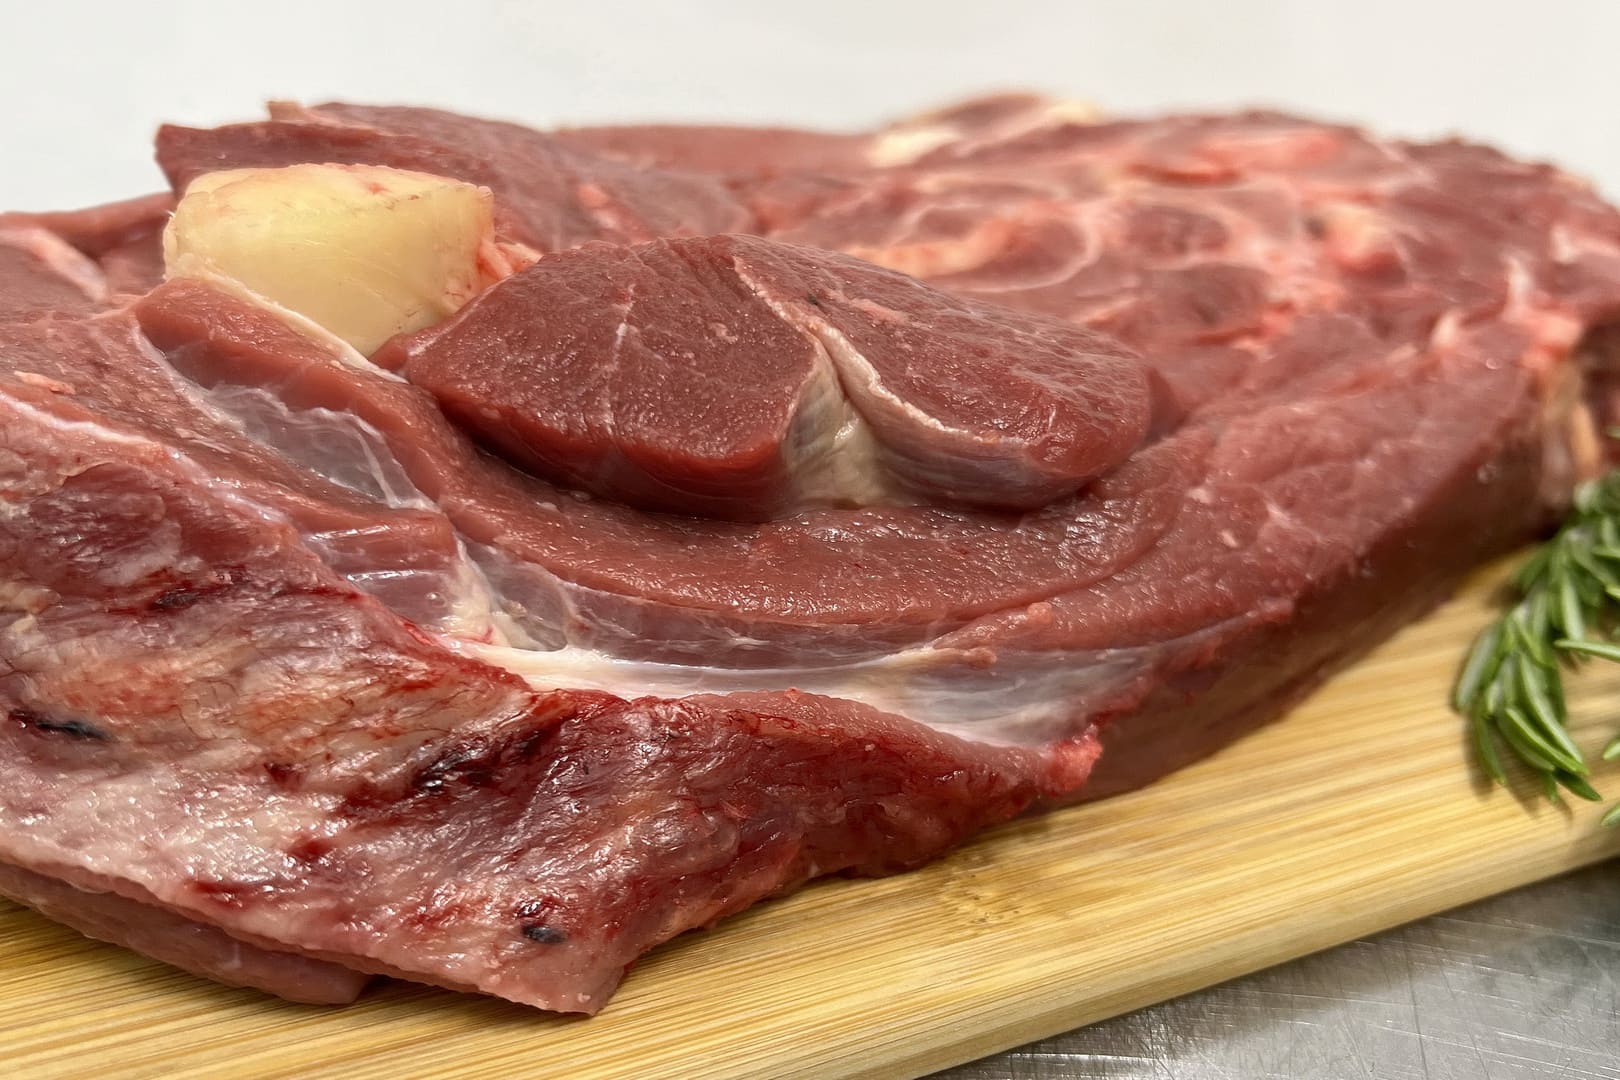 Мясной продукт из шейки говядины с костями, прослойками жира и сухожилиями, обладает богатым мясным вкусом и сочностью.  - Фото 7